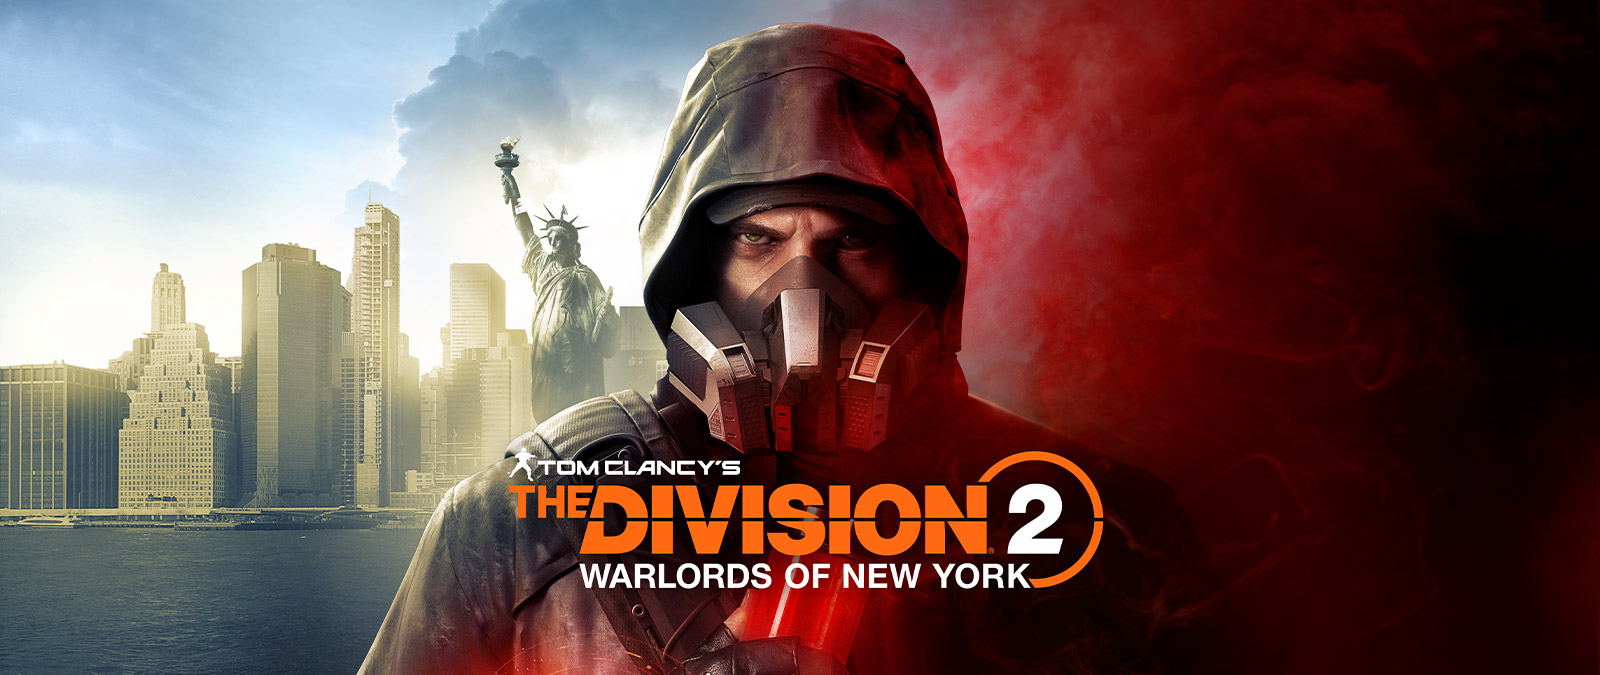 Tom Clancy's The Division 2 Warlords of New York, Aaron Keener, Özgürlük Heykeli'nin önünde bir gaz maskesi takmış şekilde duruyor